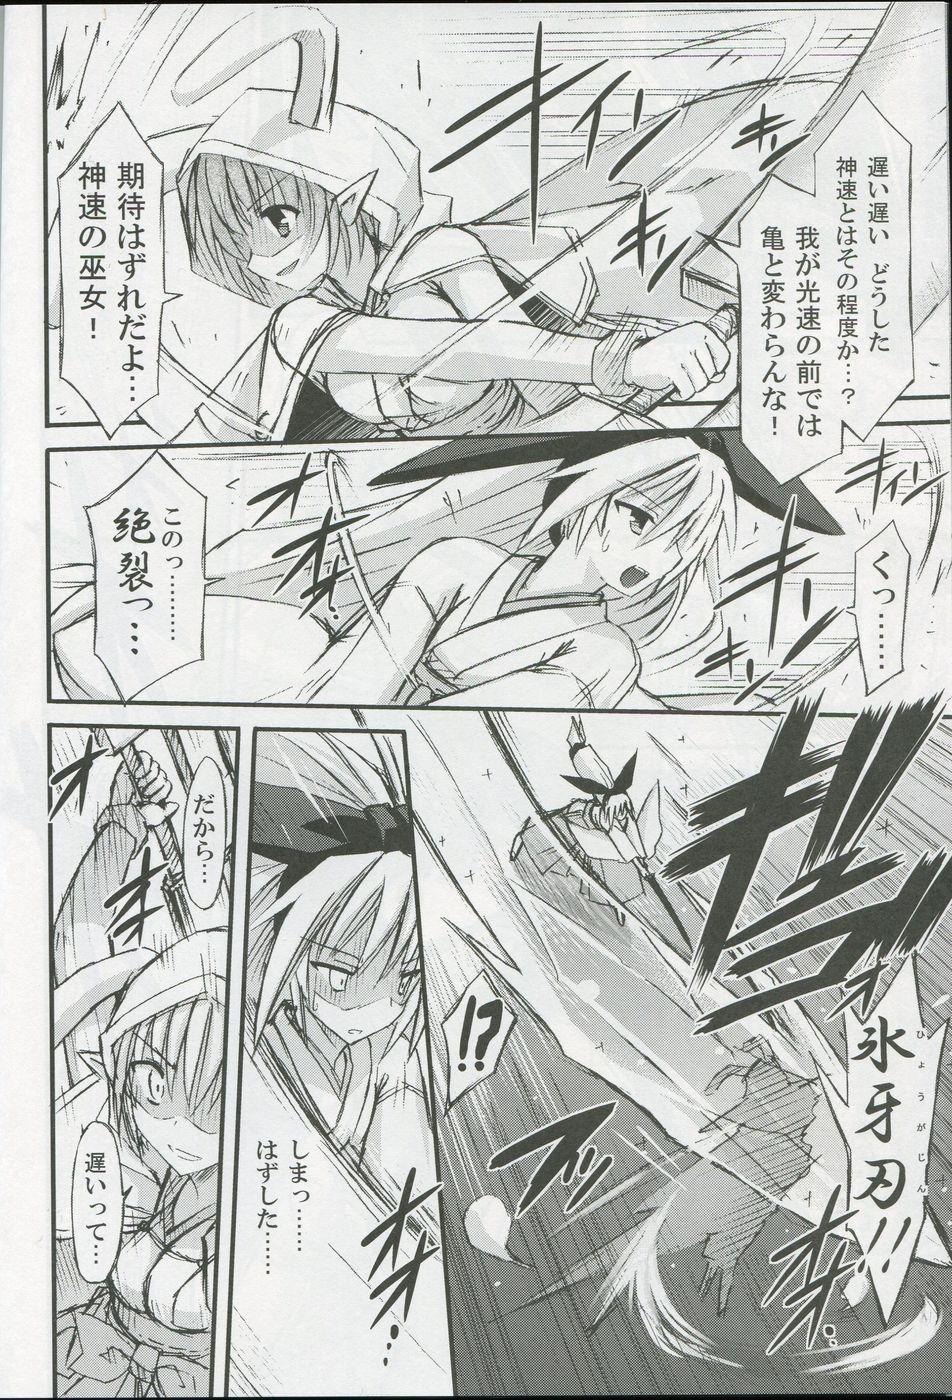 Puto freeze Hyouketsu no Miko - Tsukito Atm - Page 7